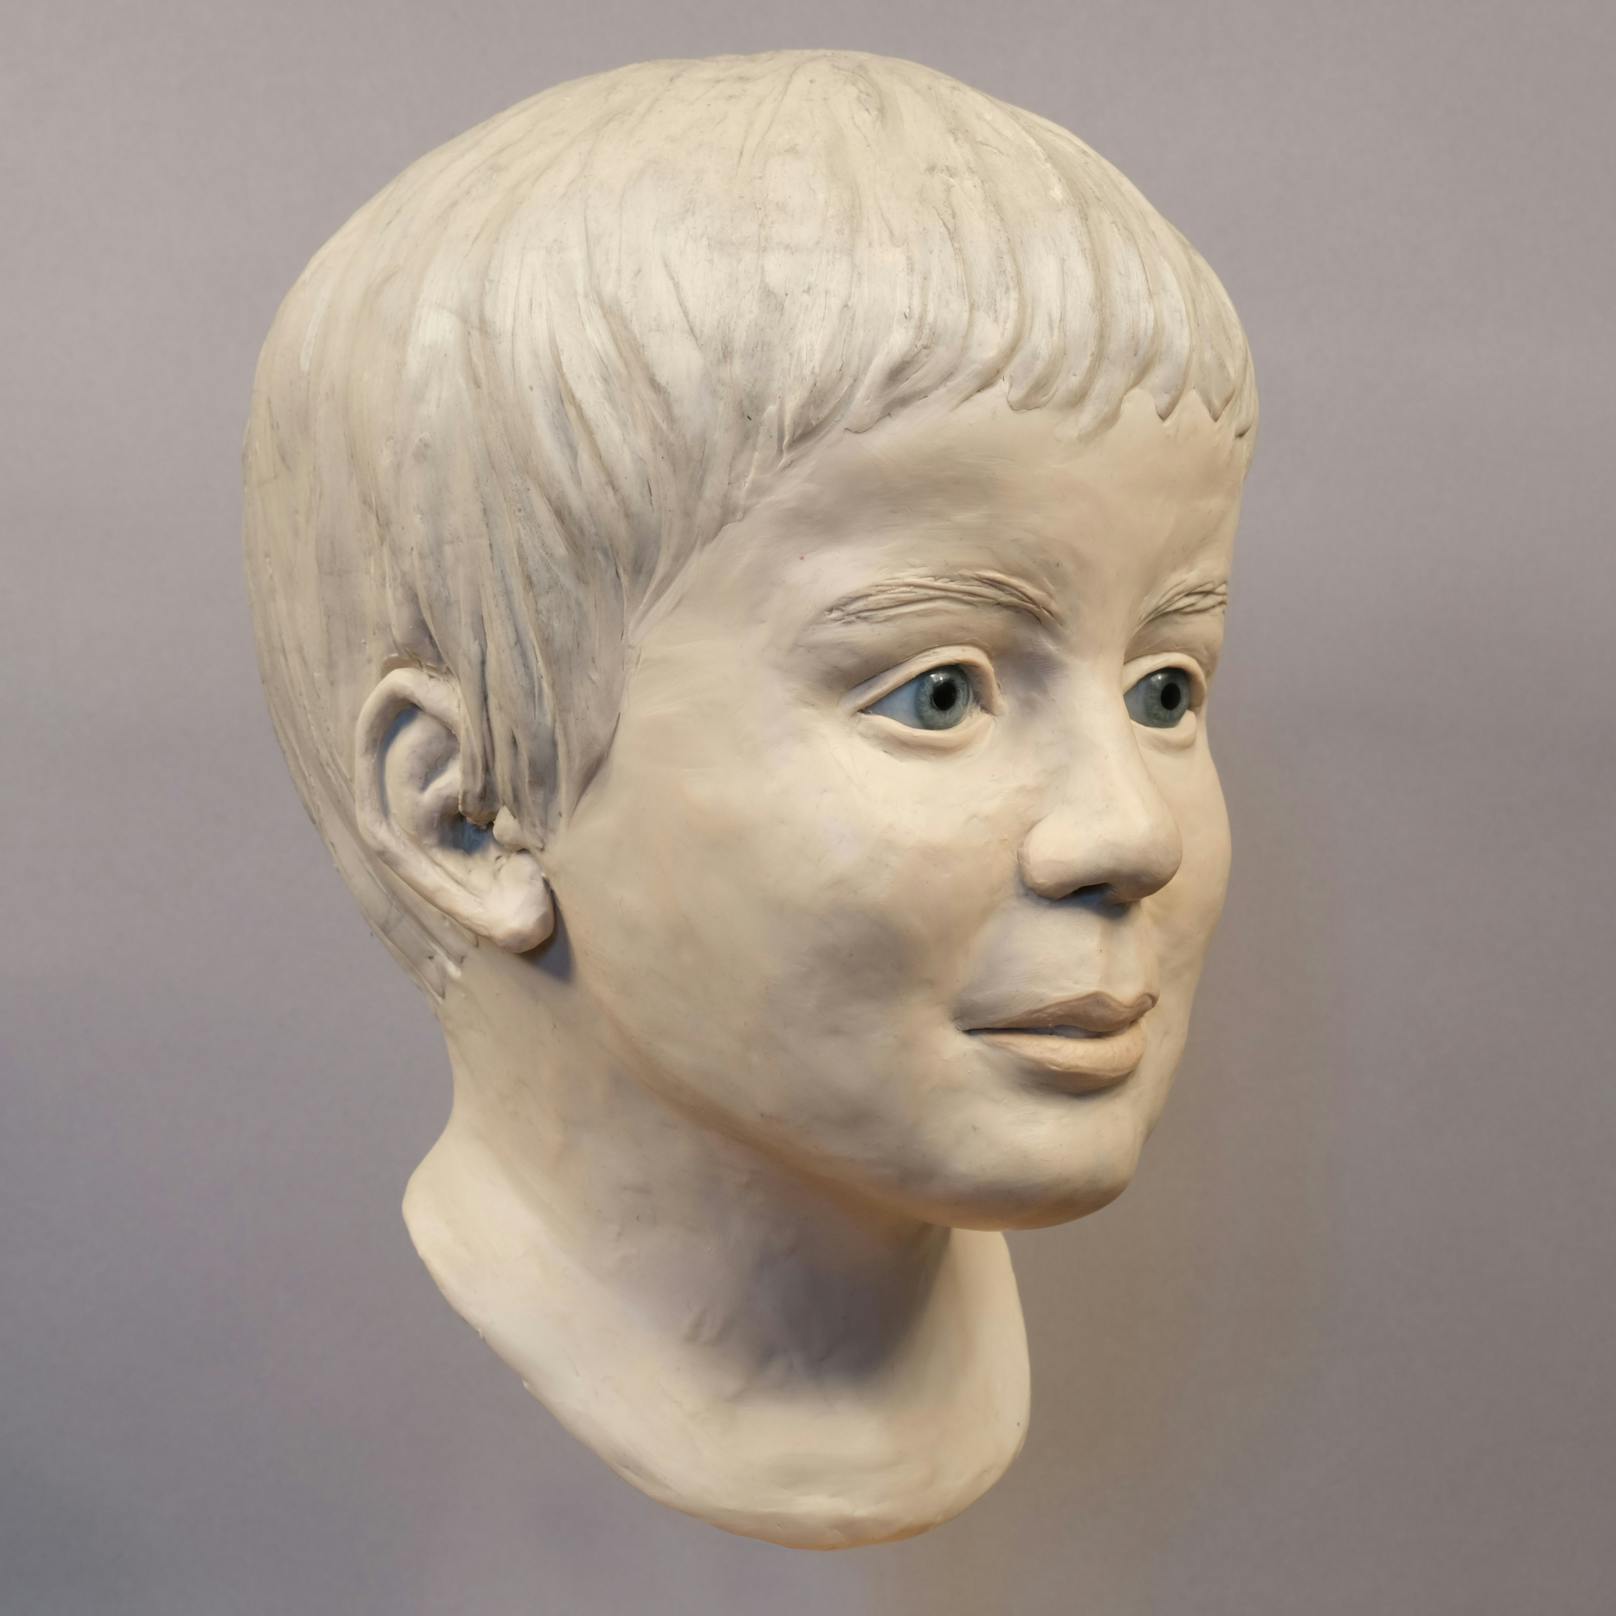 Eine, im Rahmen einer Gesichtsrekonstruktion erstellte Skulptur, zeigt wie der tote Bub aus der Donau ausgesehen haben dürfte.